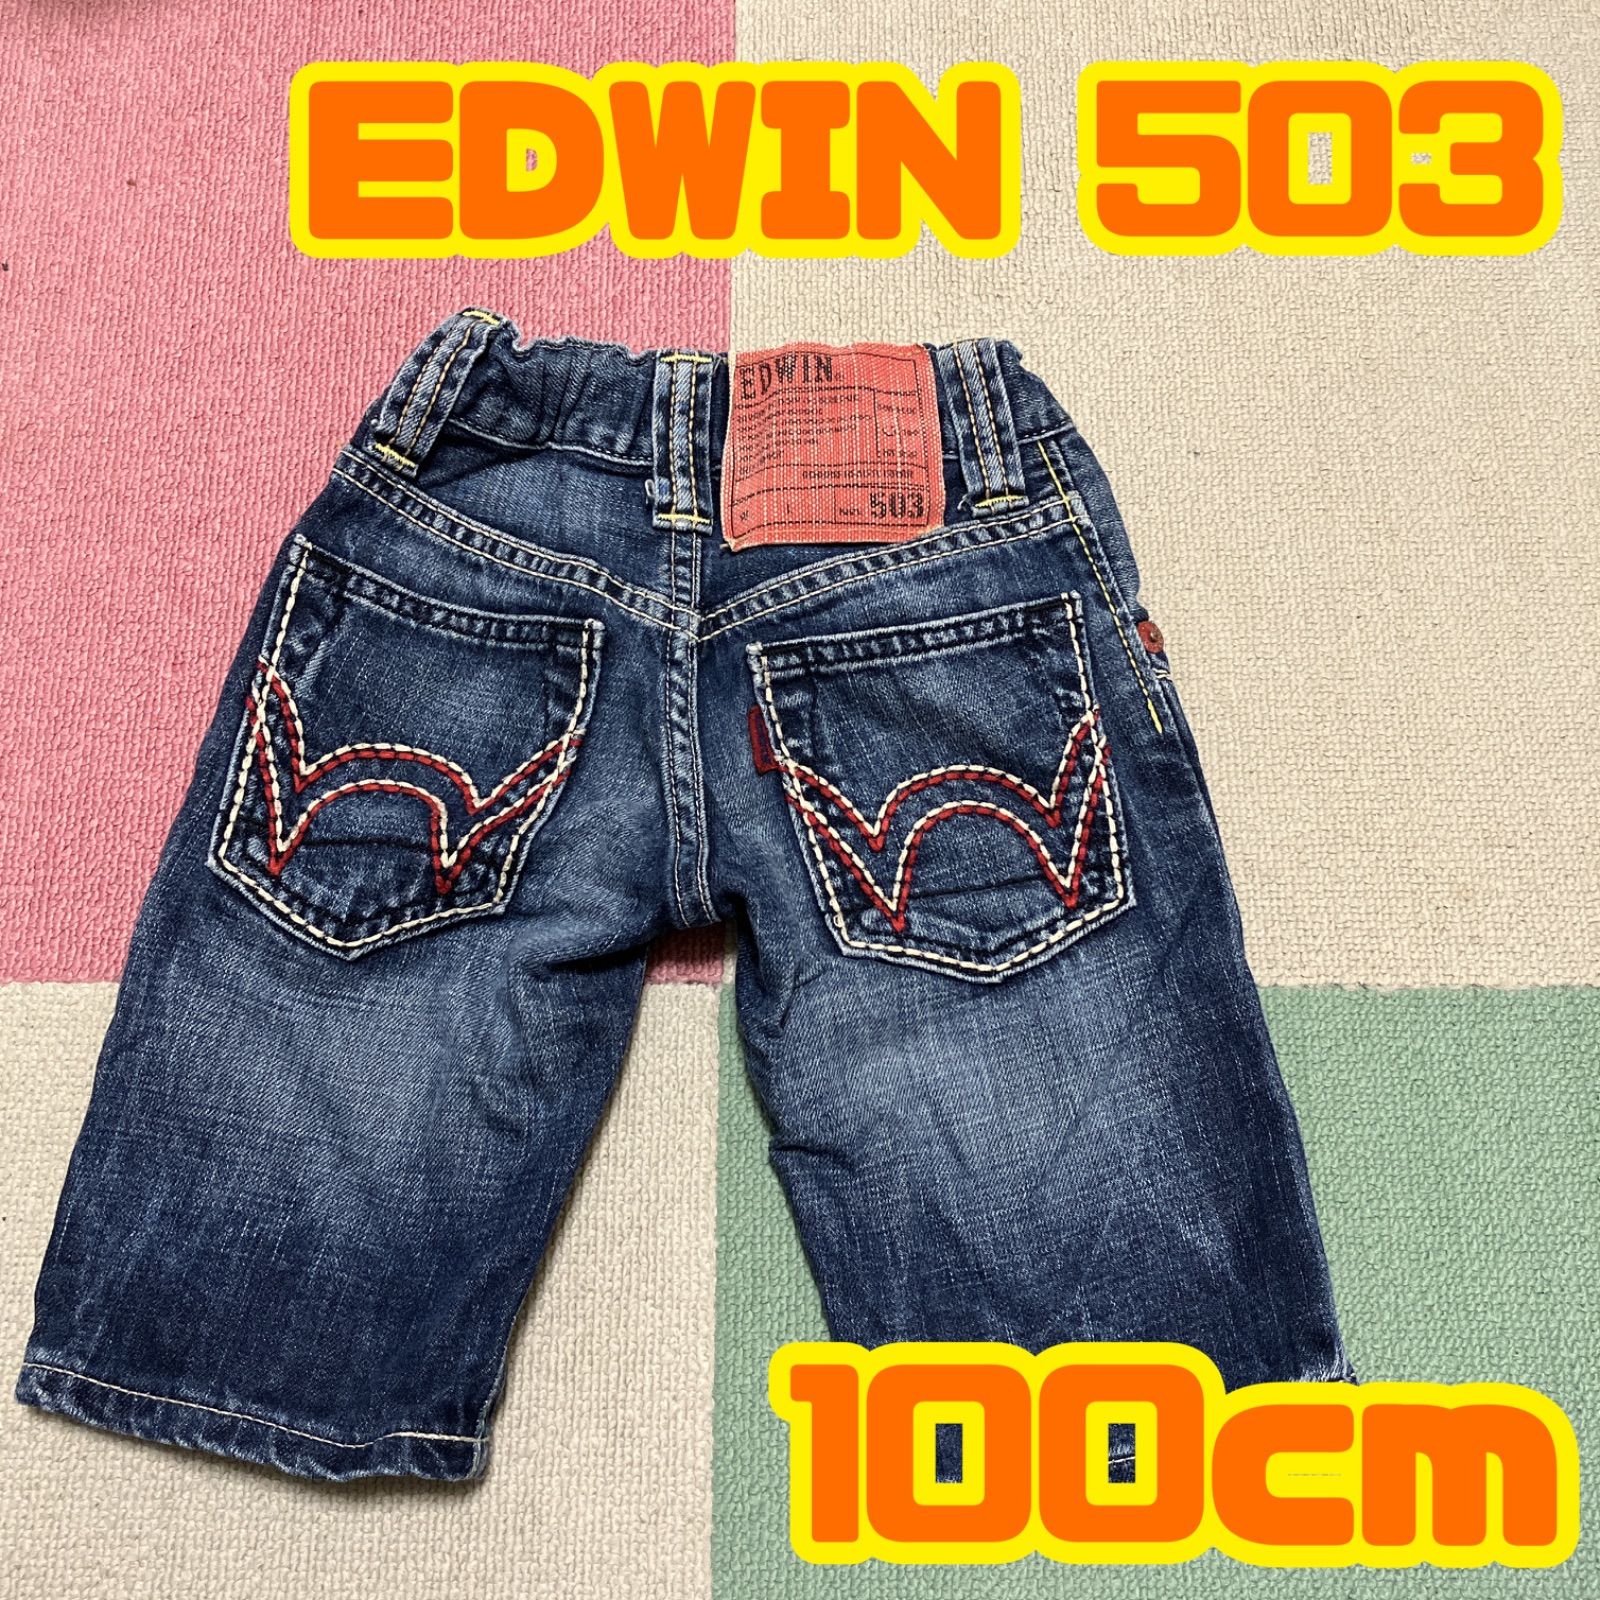 EDWIN 503 キッズ 100cm デニム ハーフパンツ エドウィン 子供服 ママと子のための古着屋さん YuU メルカリ